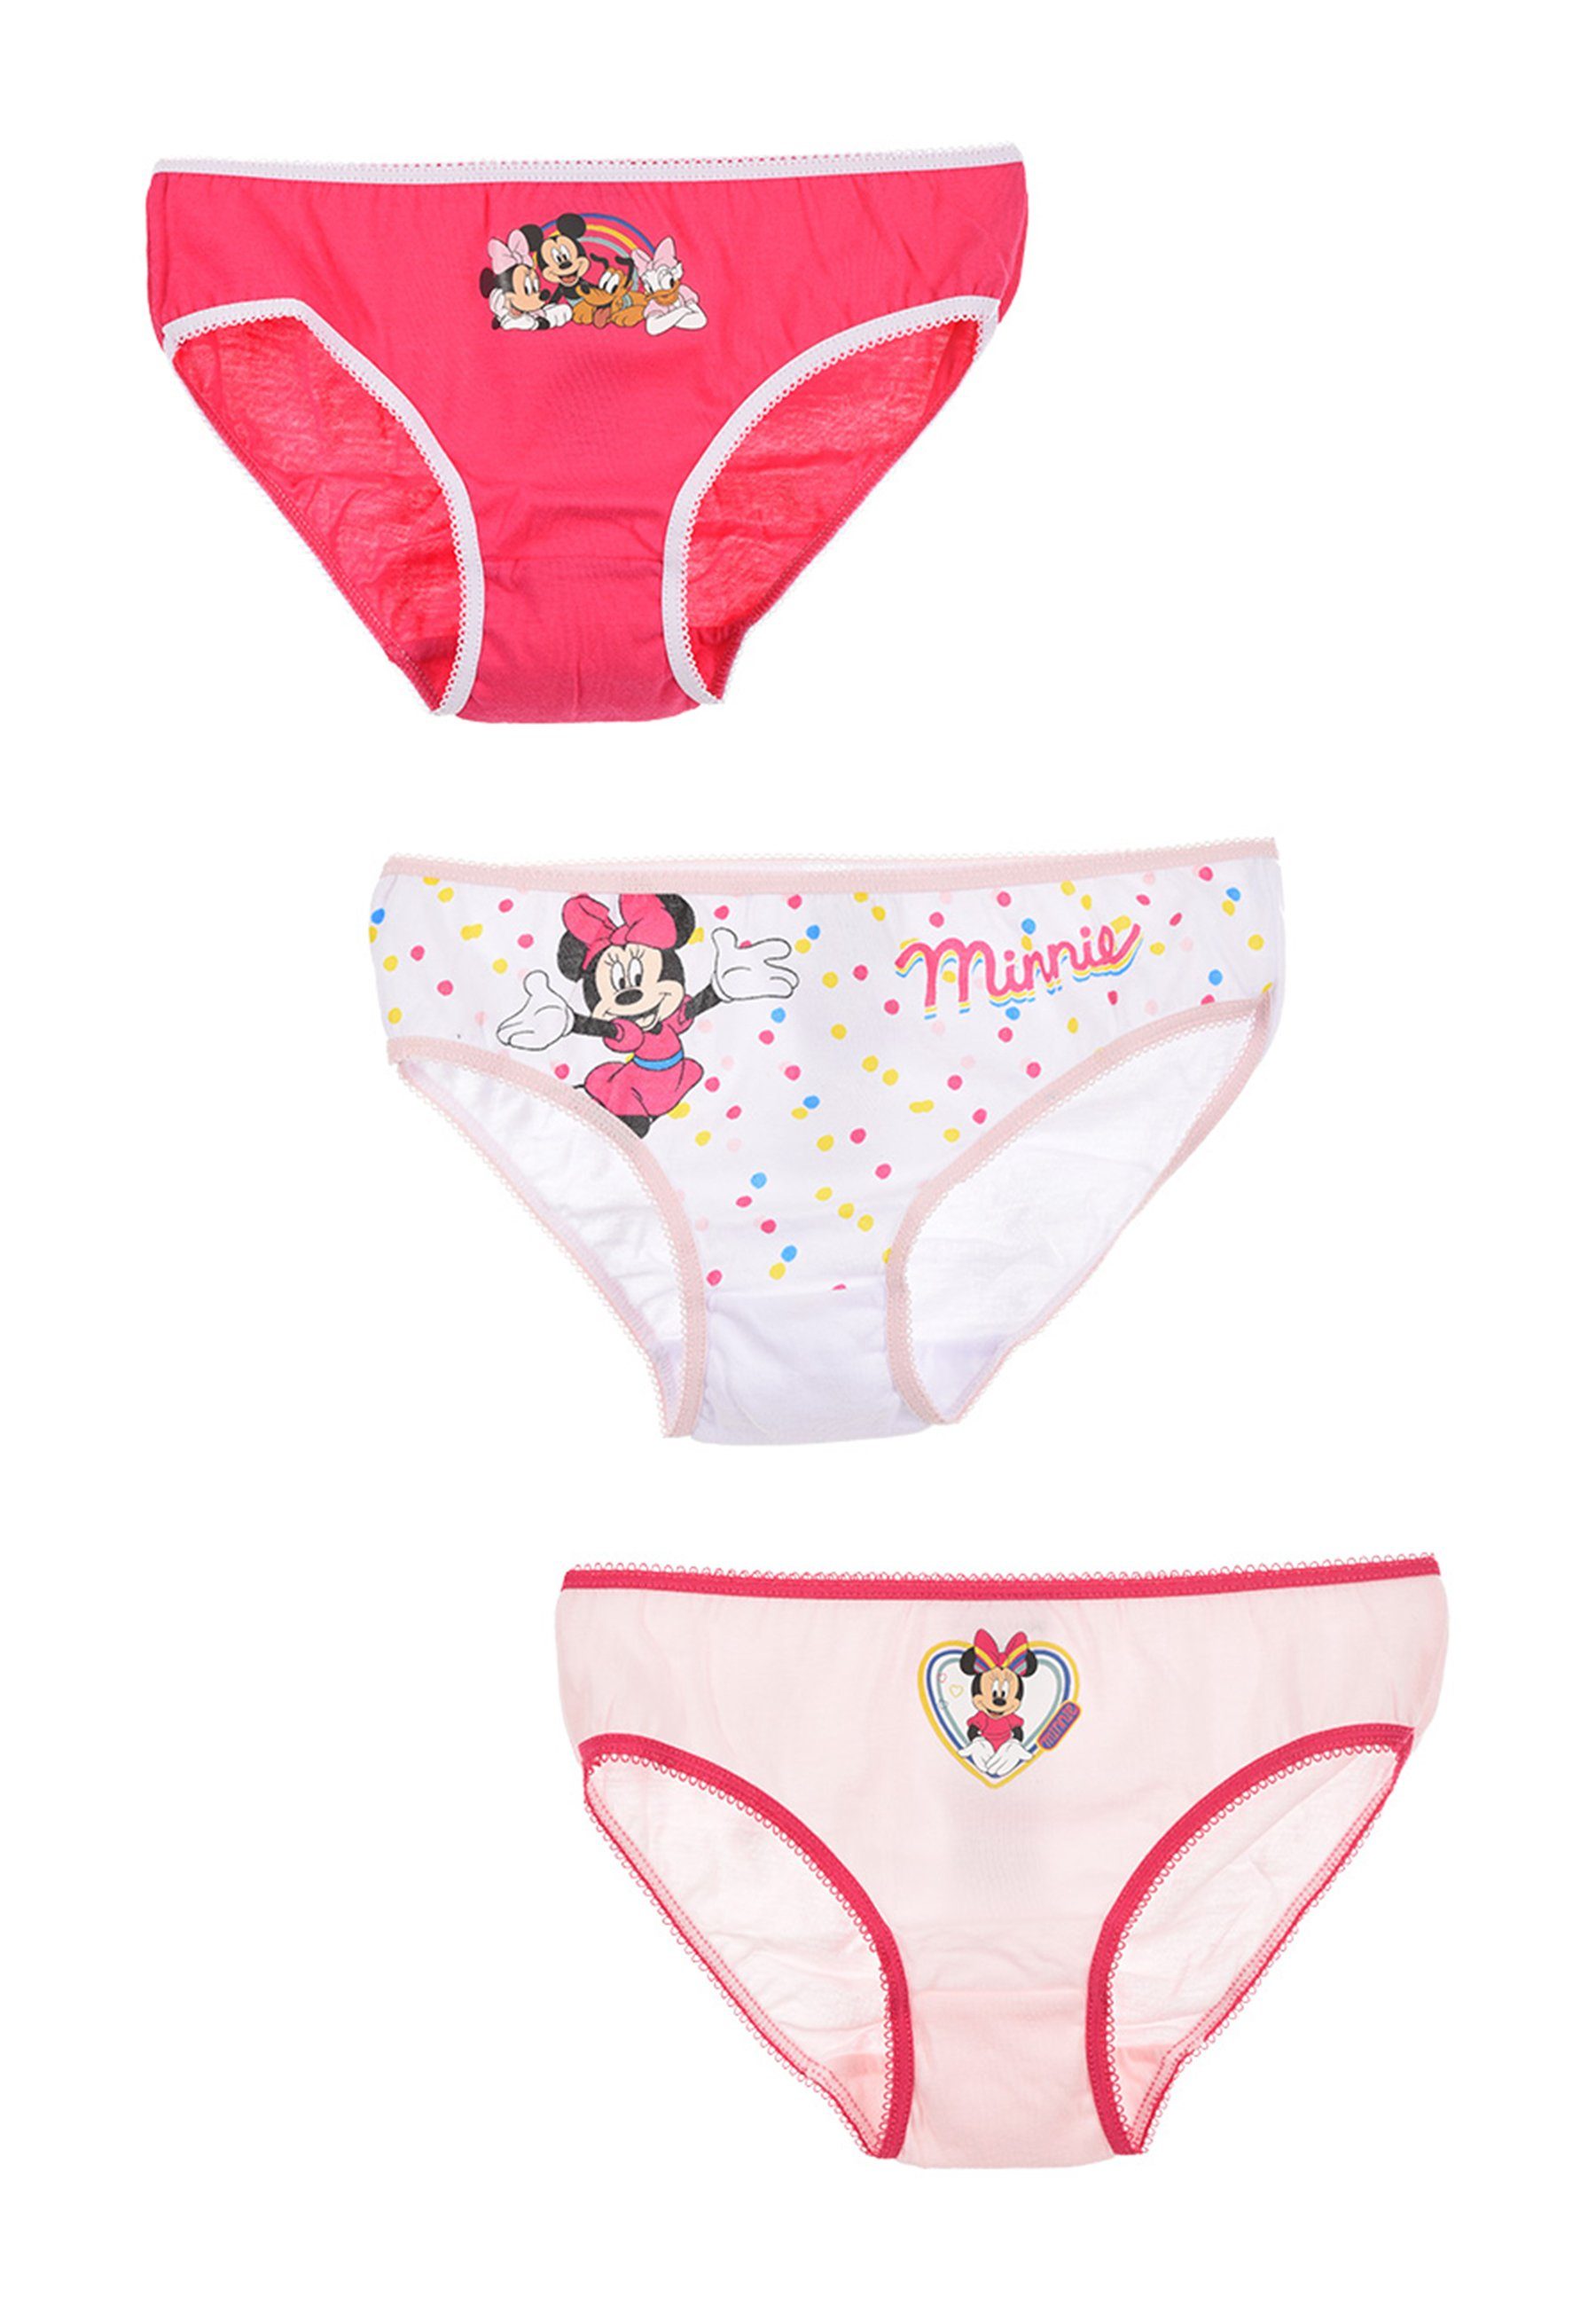 Disney Minnie Mouse Slip Kinder Mädchen Unterhosen Schlüpfer 3er Pack